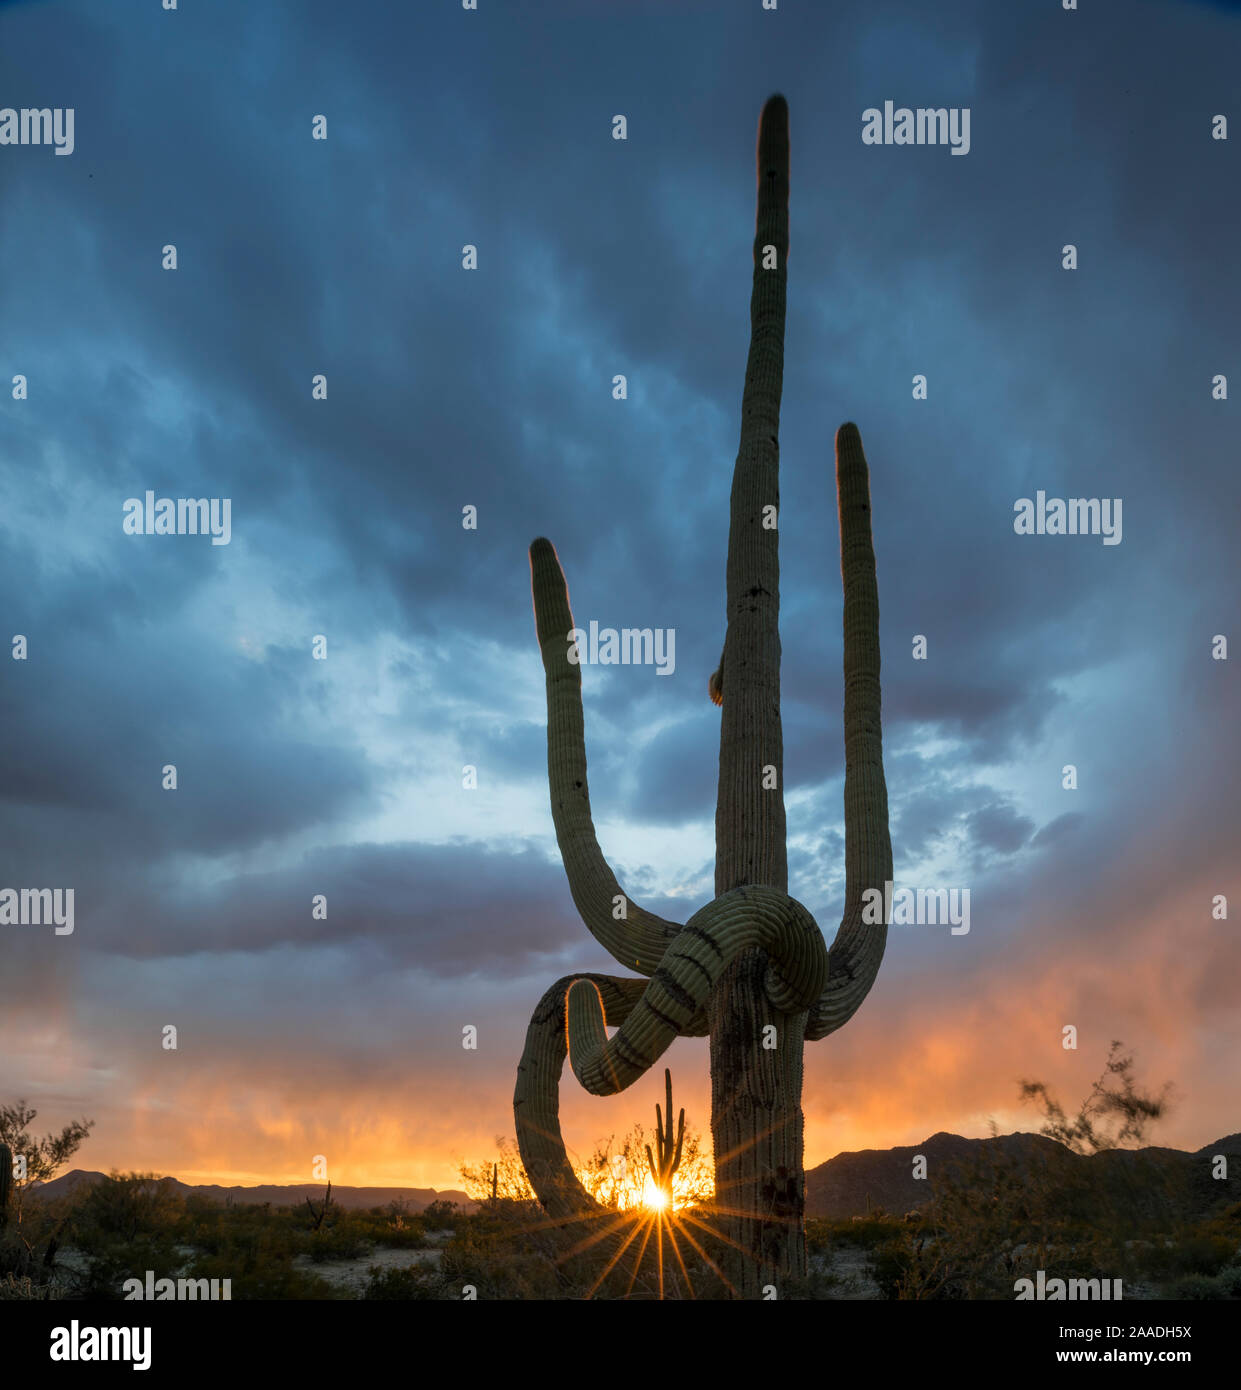 SG - archivados duplicar el 10/10/2017. Cacto Saguaro (Carnegiea gigantea) al atardecer, con caidas frost extremidades dañadas, al sur de las montañas de Maricopa desierto Sonoran Desert National Monument, Arizona, EE.UU., marzo. Foto de stock